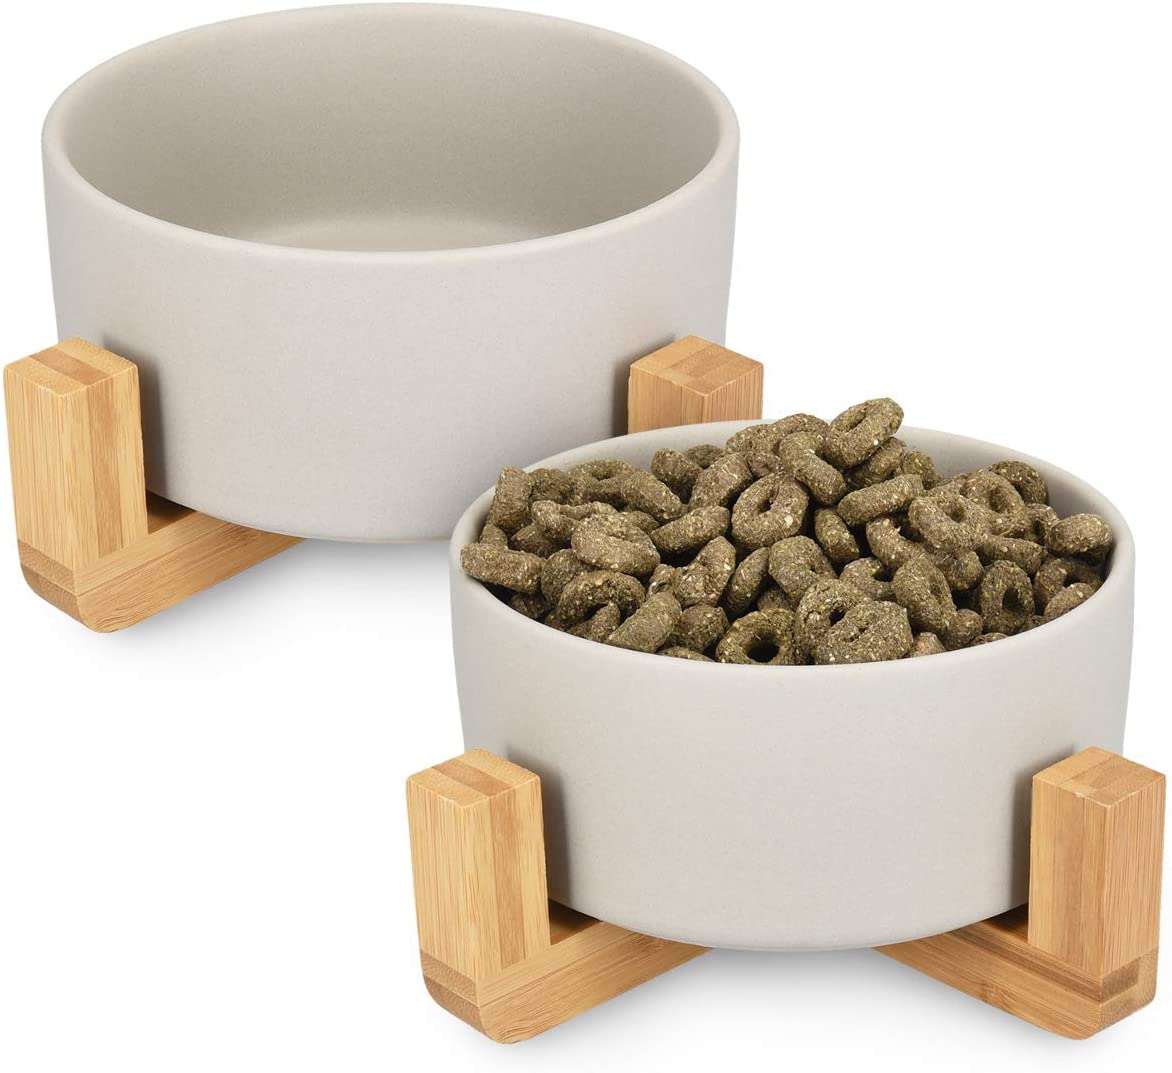  Navaris 2X Cuencos elevados para Mascotas - Comedero y Bebedero de cerámica para Perros Gatos Cachorros - con Soportes de bambú Antideslizante - en Gris 